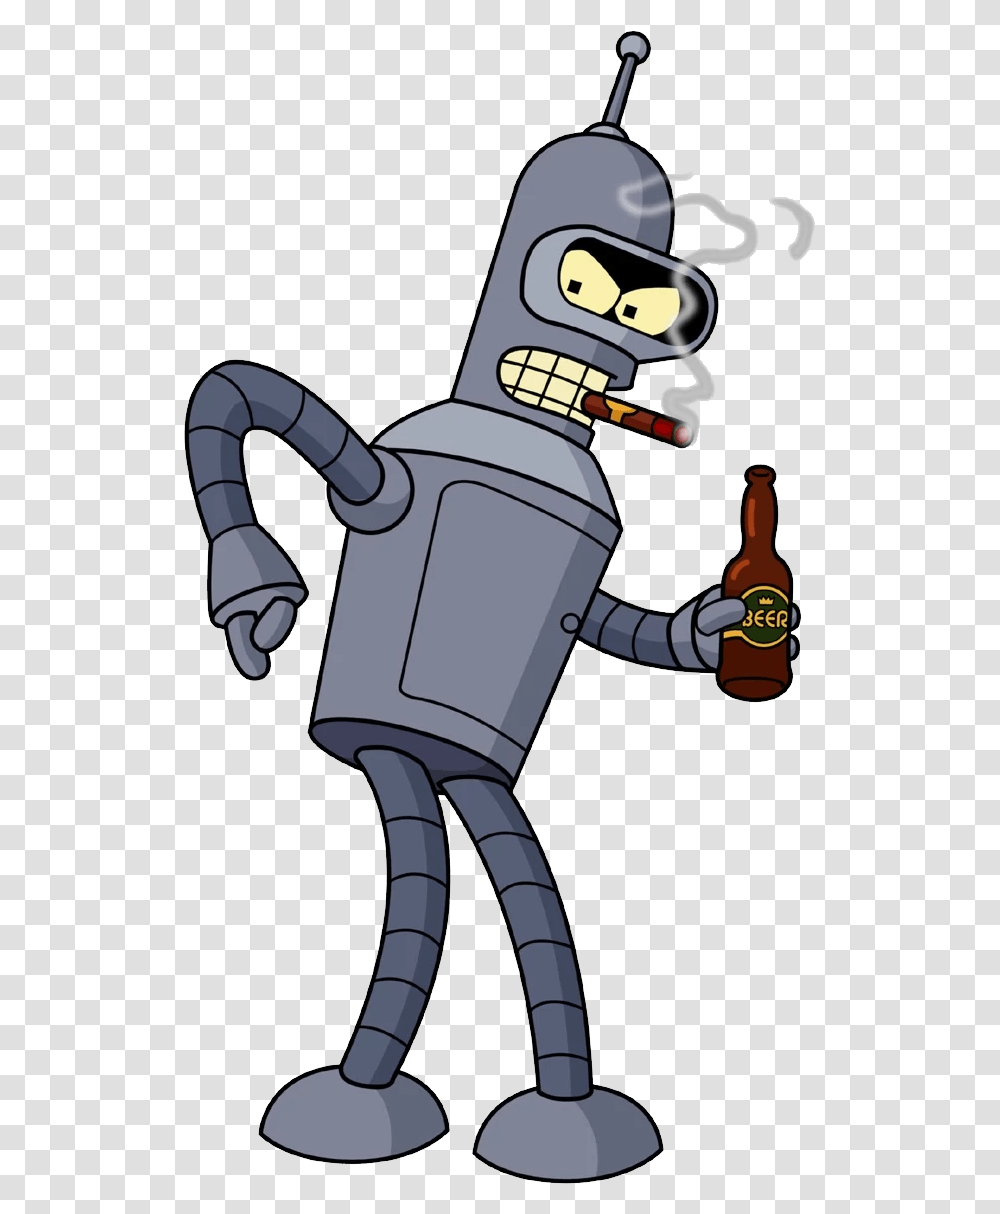 Futurama Bender Image, Bottle, Alcohol, Beverage, Drink Transparent Png